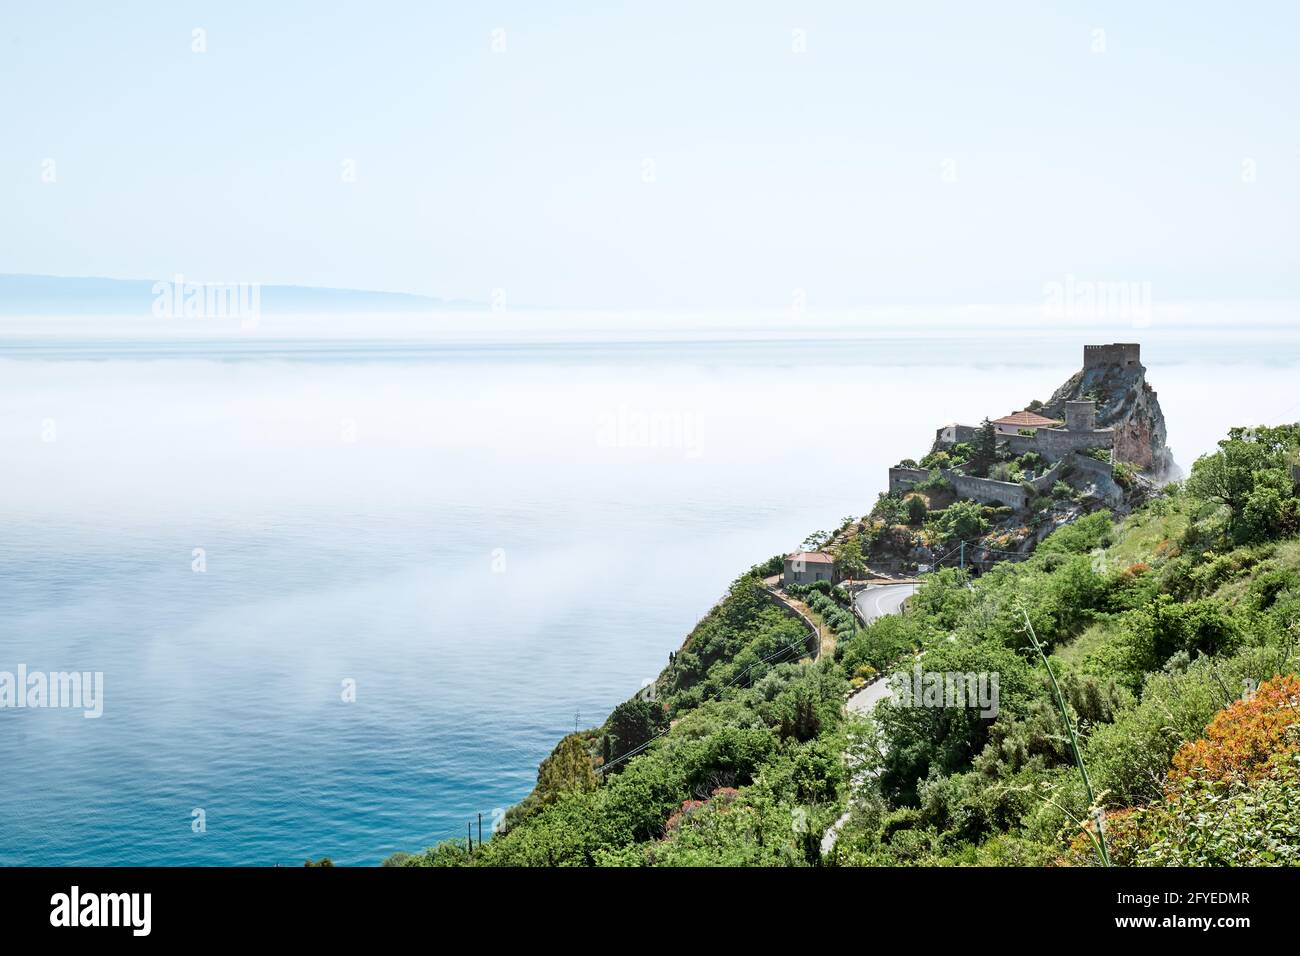 Das Schloss Sant'Alessio ist von Nebel bedeckt. Schönheit in Sizilien als Touristenattraktion. Auf dem mittelmeer würzen. Ionisches Meer. Stockfoto